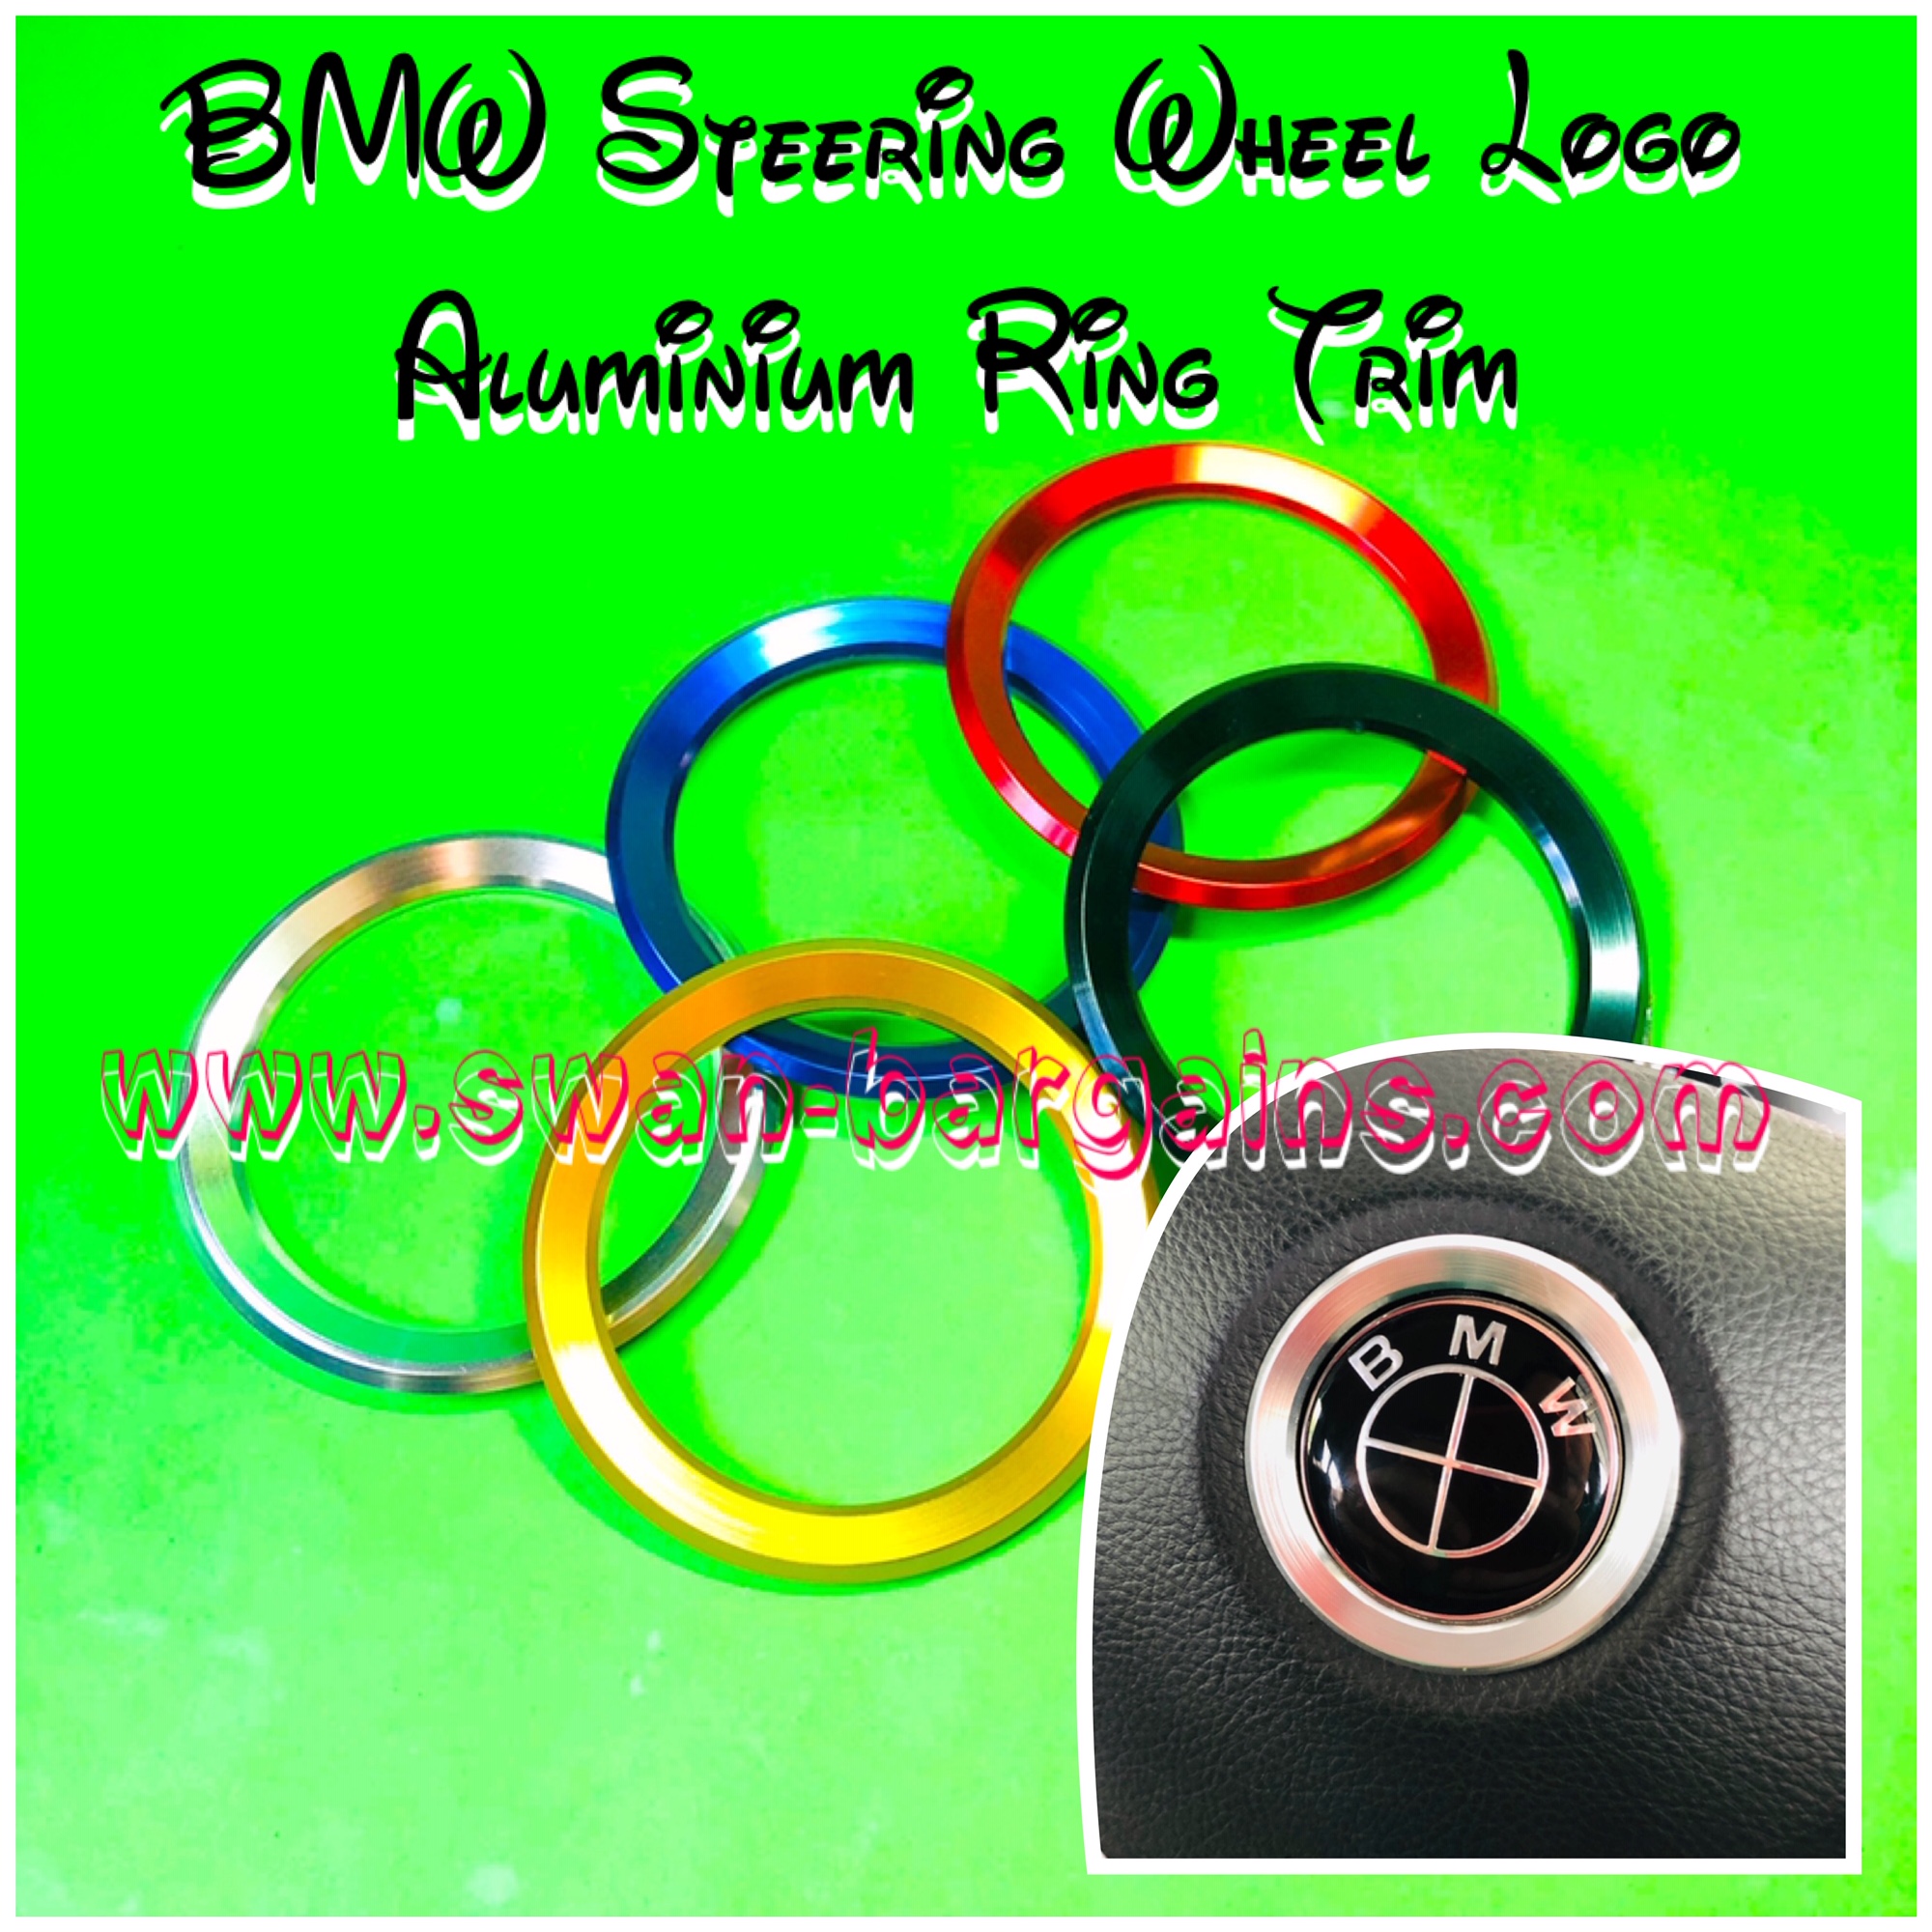 BMW Steering Wheel Logo Aluminium Ring Trim Singapore